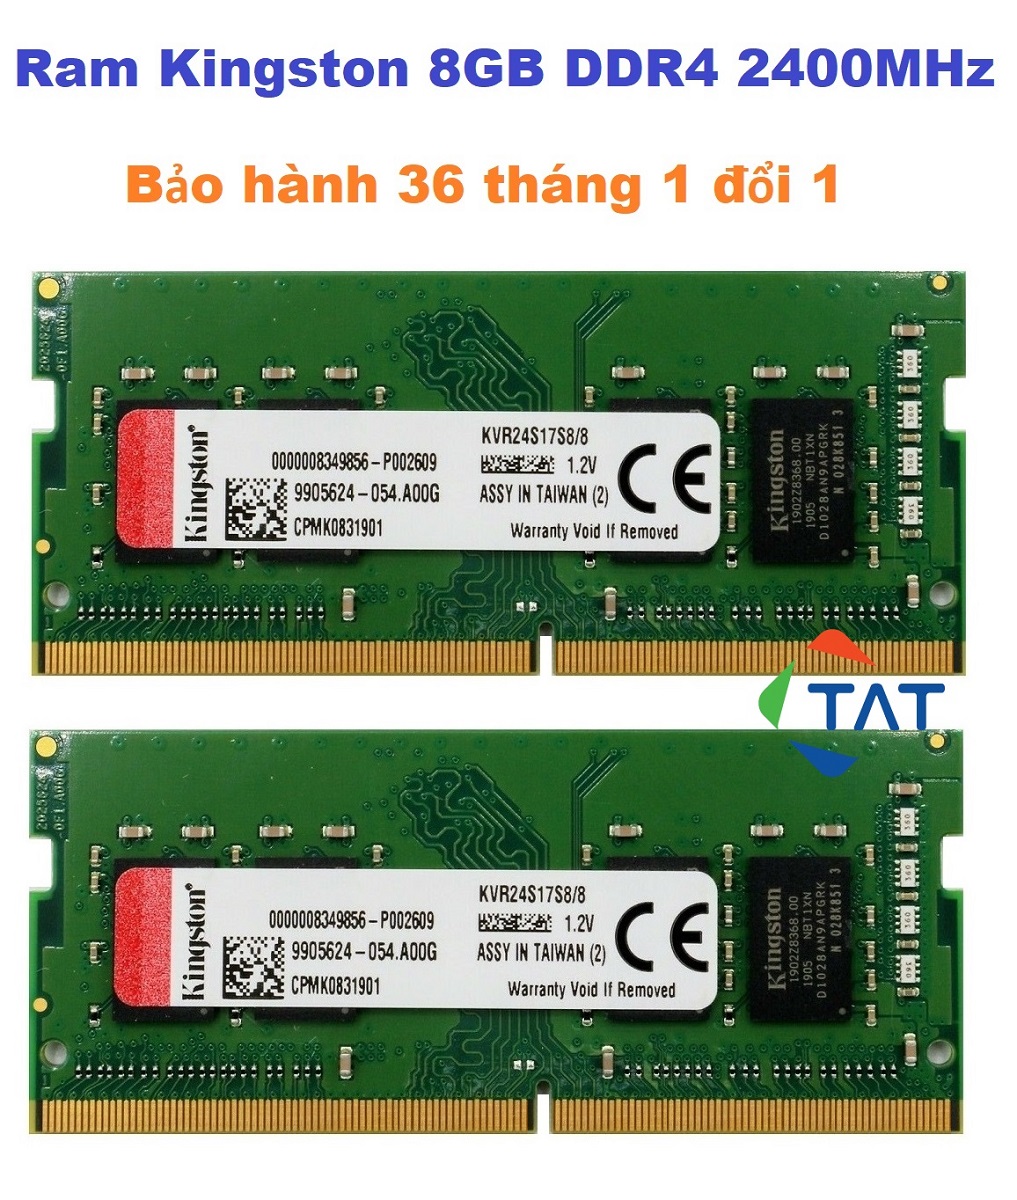 Ram Kingston 8GB DDR4 2400MHz 1.2V Sodimm PC4